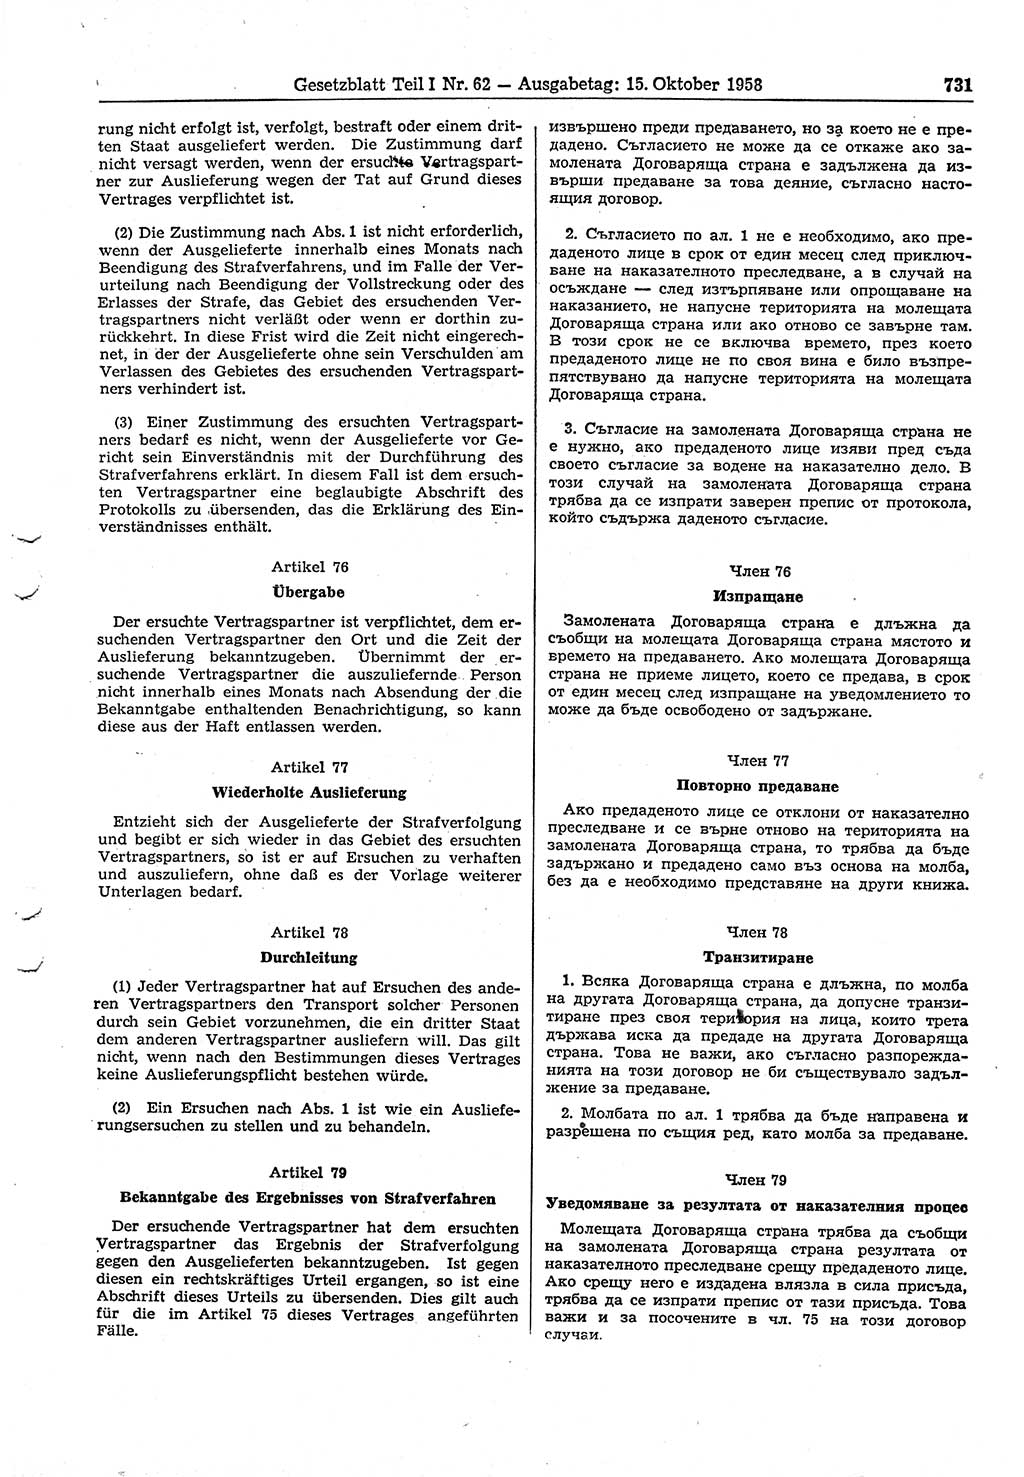 Gesetzblatt (GBl.) der Deutschen Demokratischen Republik (DDR) Teil Ⅰ 1958, Seite 731 (GBl. DDR Ⅰ 1958, S. 731)